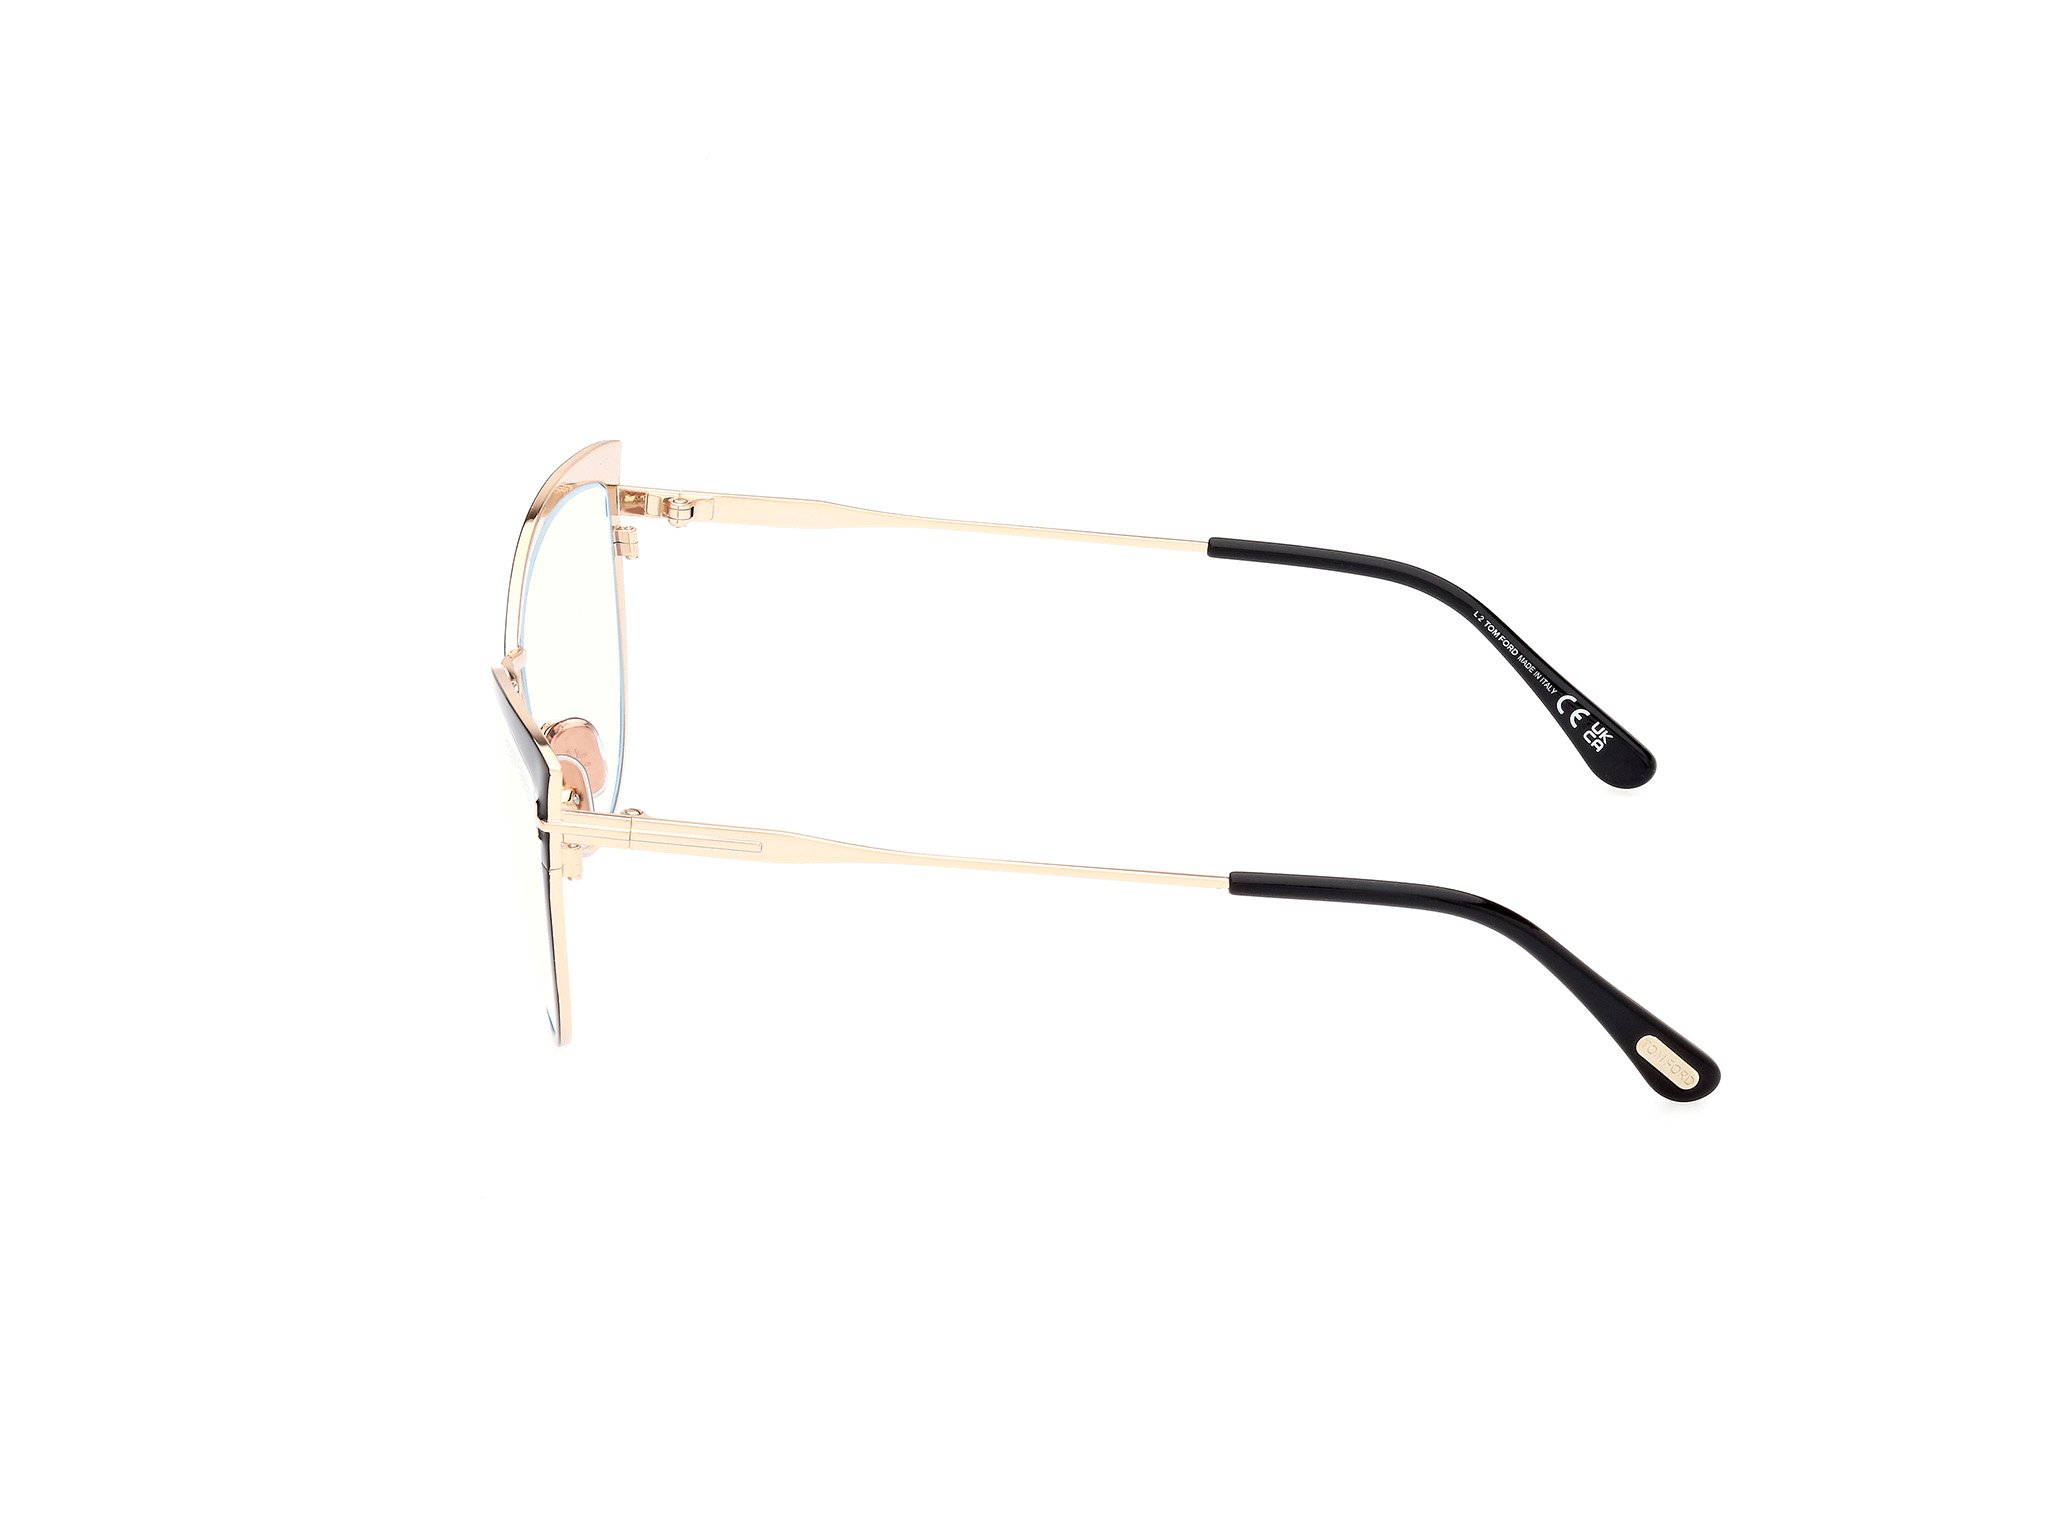 Das Bild zeigt die Korrektionsbrille FT5877-B 001 von der Marke Tom Ford in schwarz/rose gold.